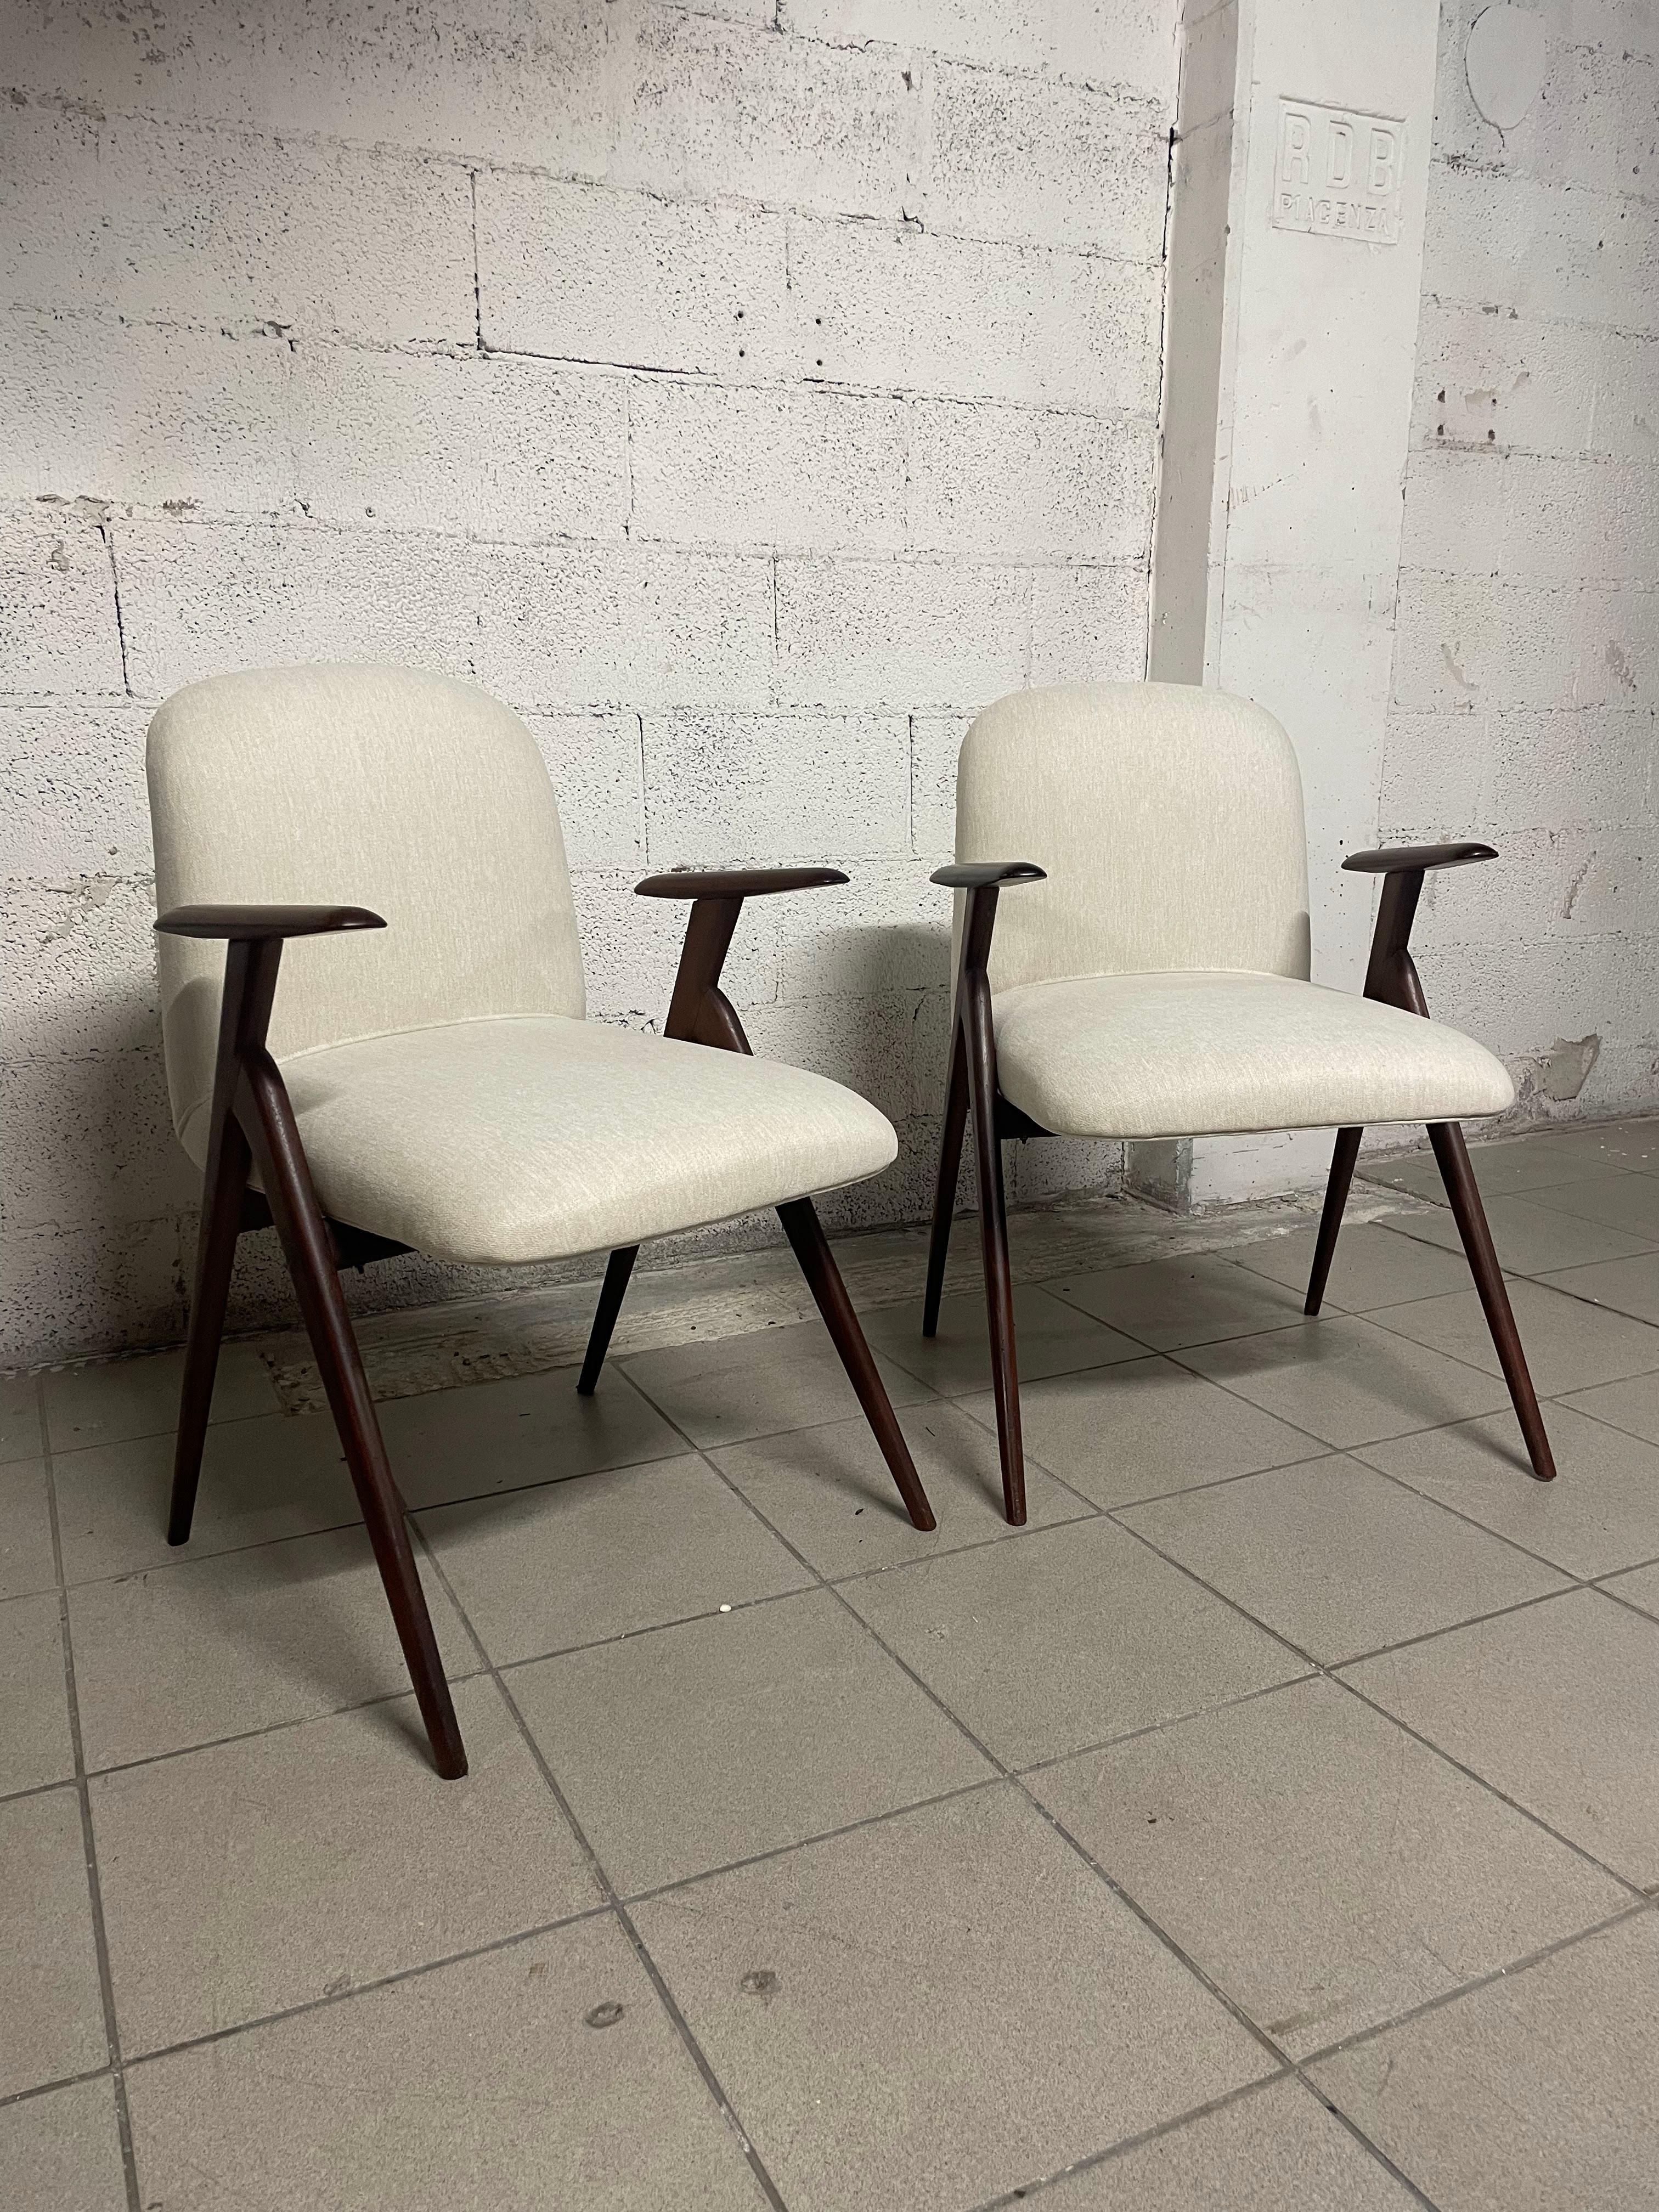 Ein von den Architekten Lietti und Motta entworfenes und von Gaetano und Alessandro Besana (Mariano Comense - Italia) 1958 hergestelltes Sitzmöbel für den Innenausbau.

Das Gestell aus Teakholz wird von einer naturfarbenen Sitzbank begleitet, die